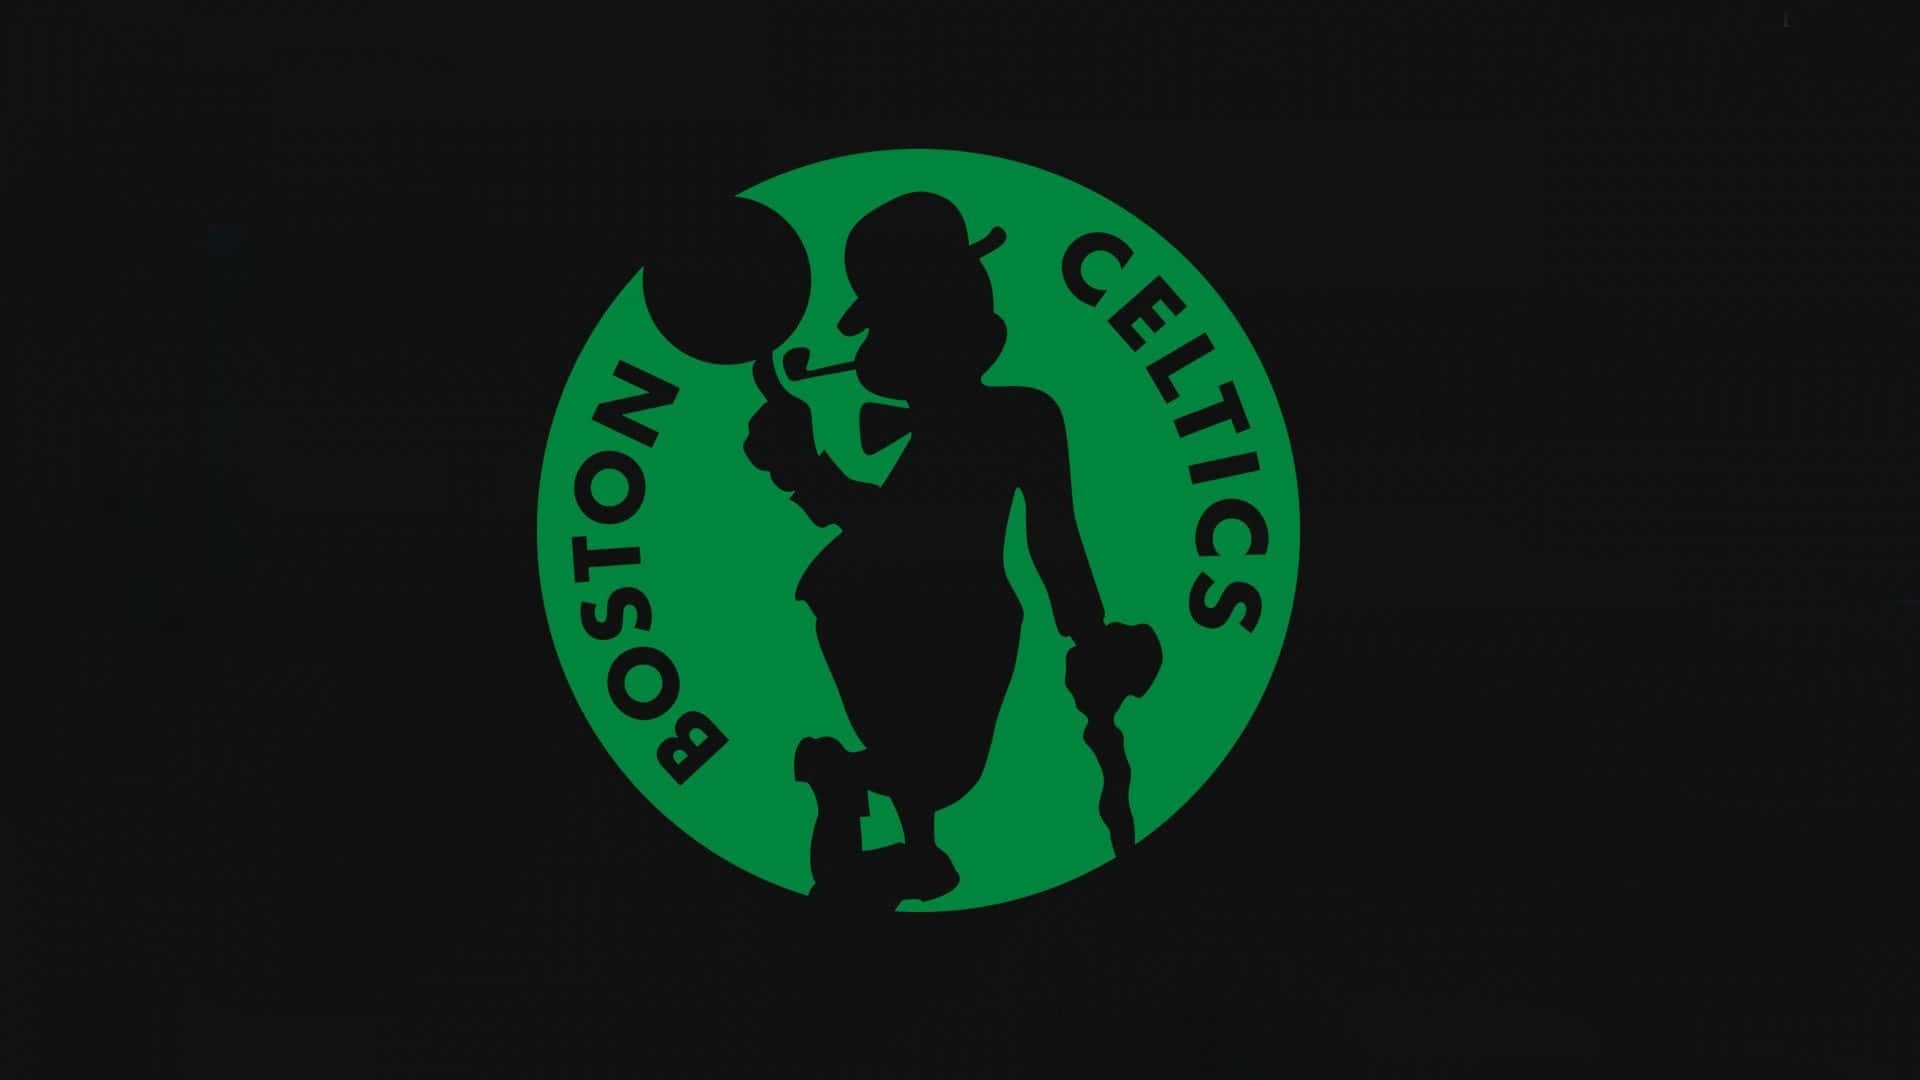 Celticsschwarzes Und Grünes Logo Wallpaper